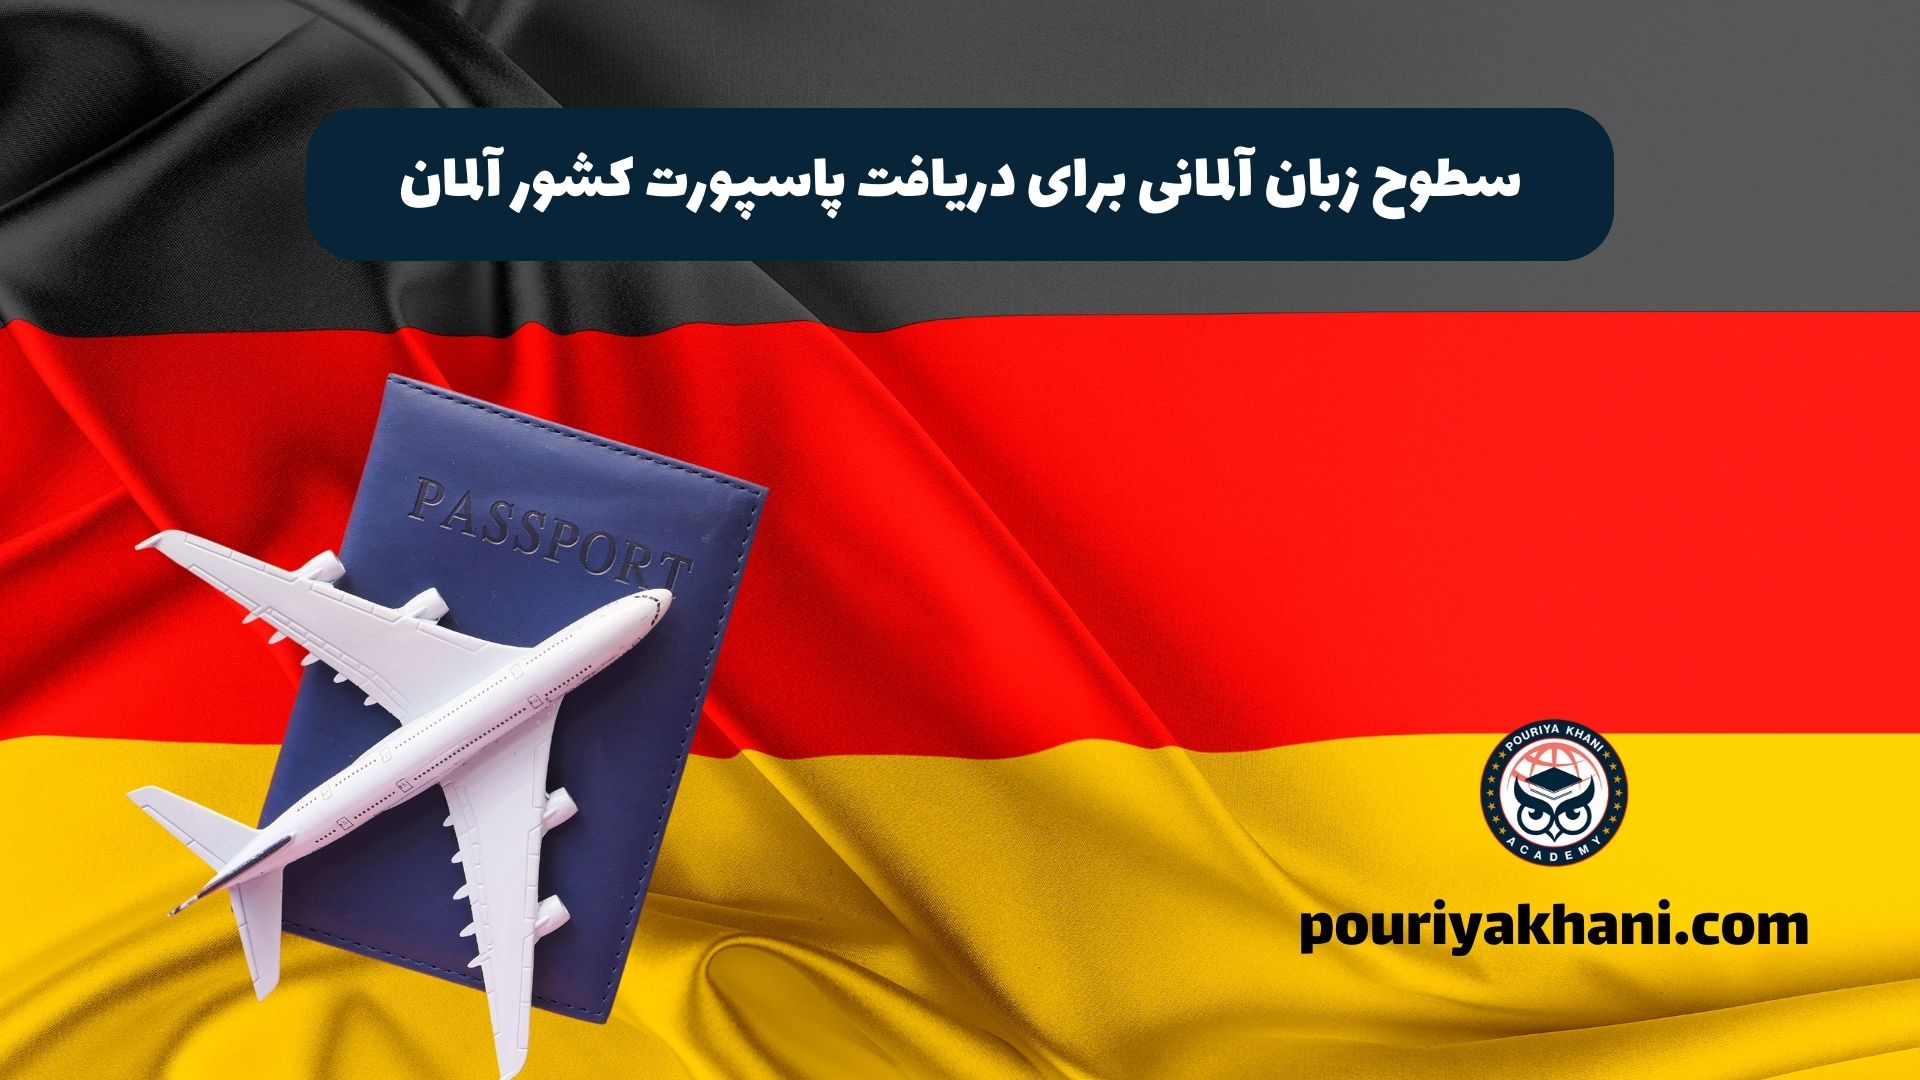 سطوح زبان آلمانی برای دریافت پاسپورت کشور آلمان